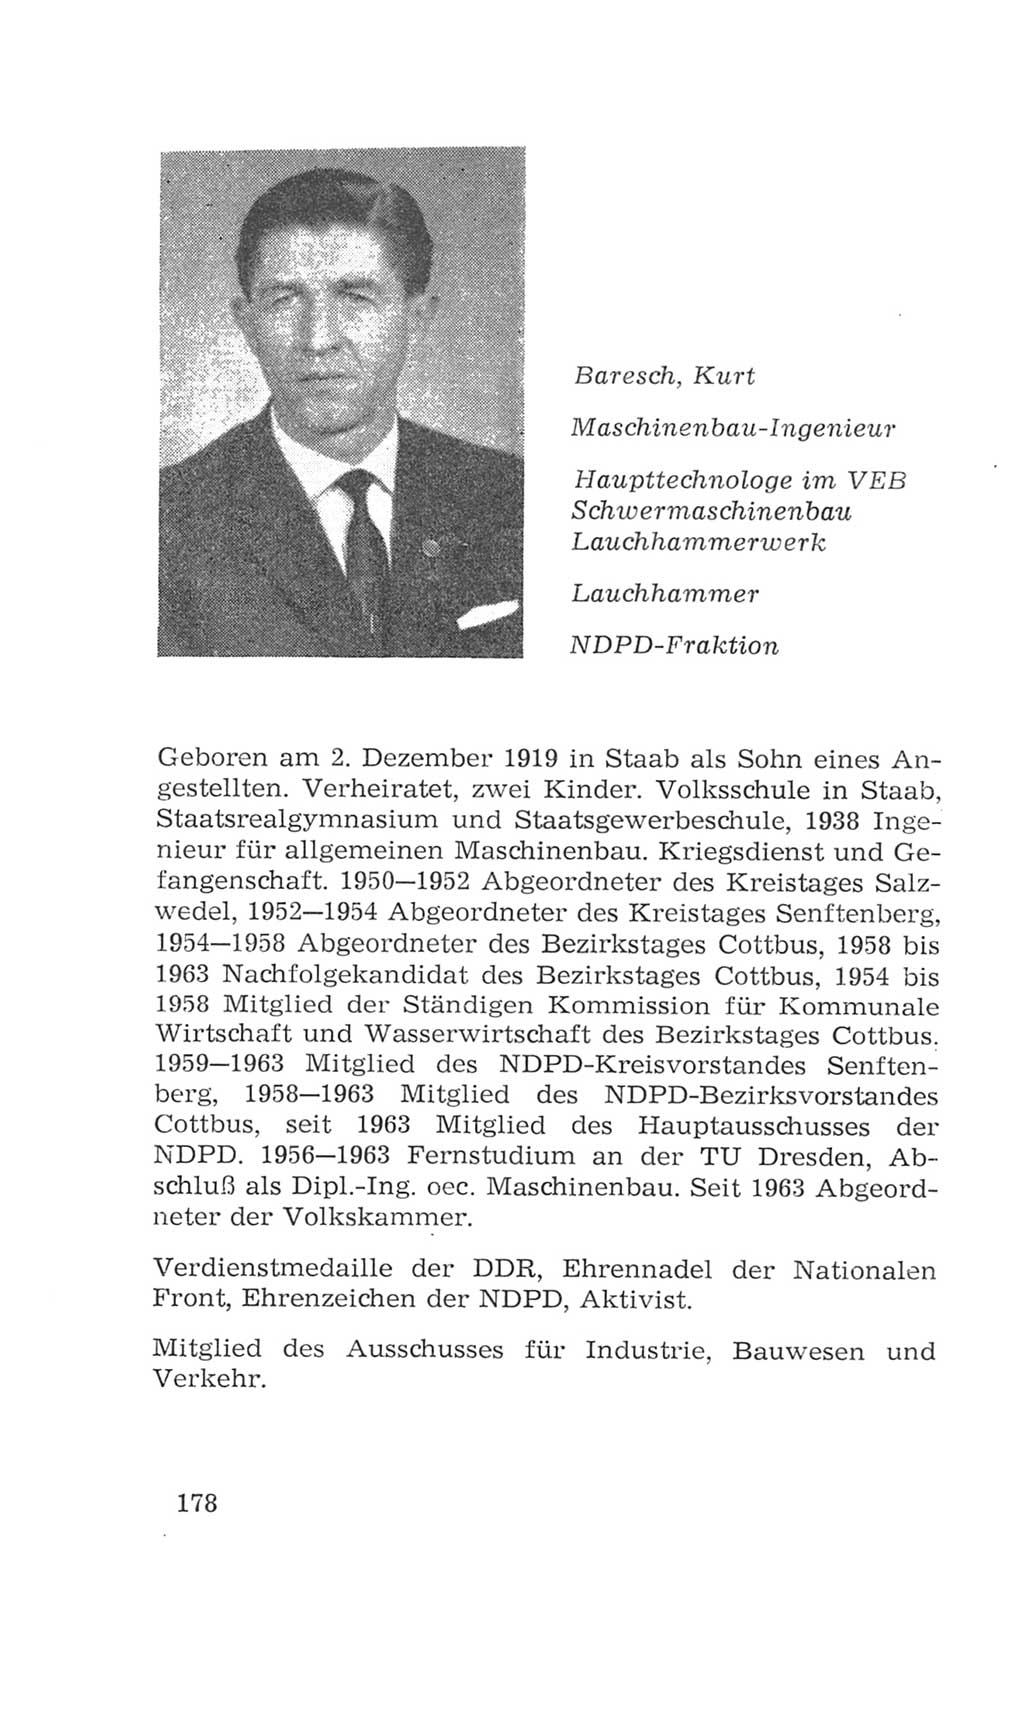 Volkskammer (VK) der Deutschen Demokratischen Republik (DDR), 4. Wahlperiode 1963-1967, Seite 178 (VK. DDR 4. WP. 1963-1967, S. 178)